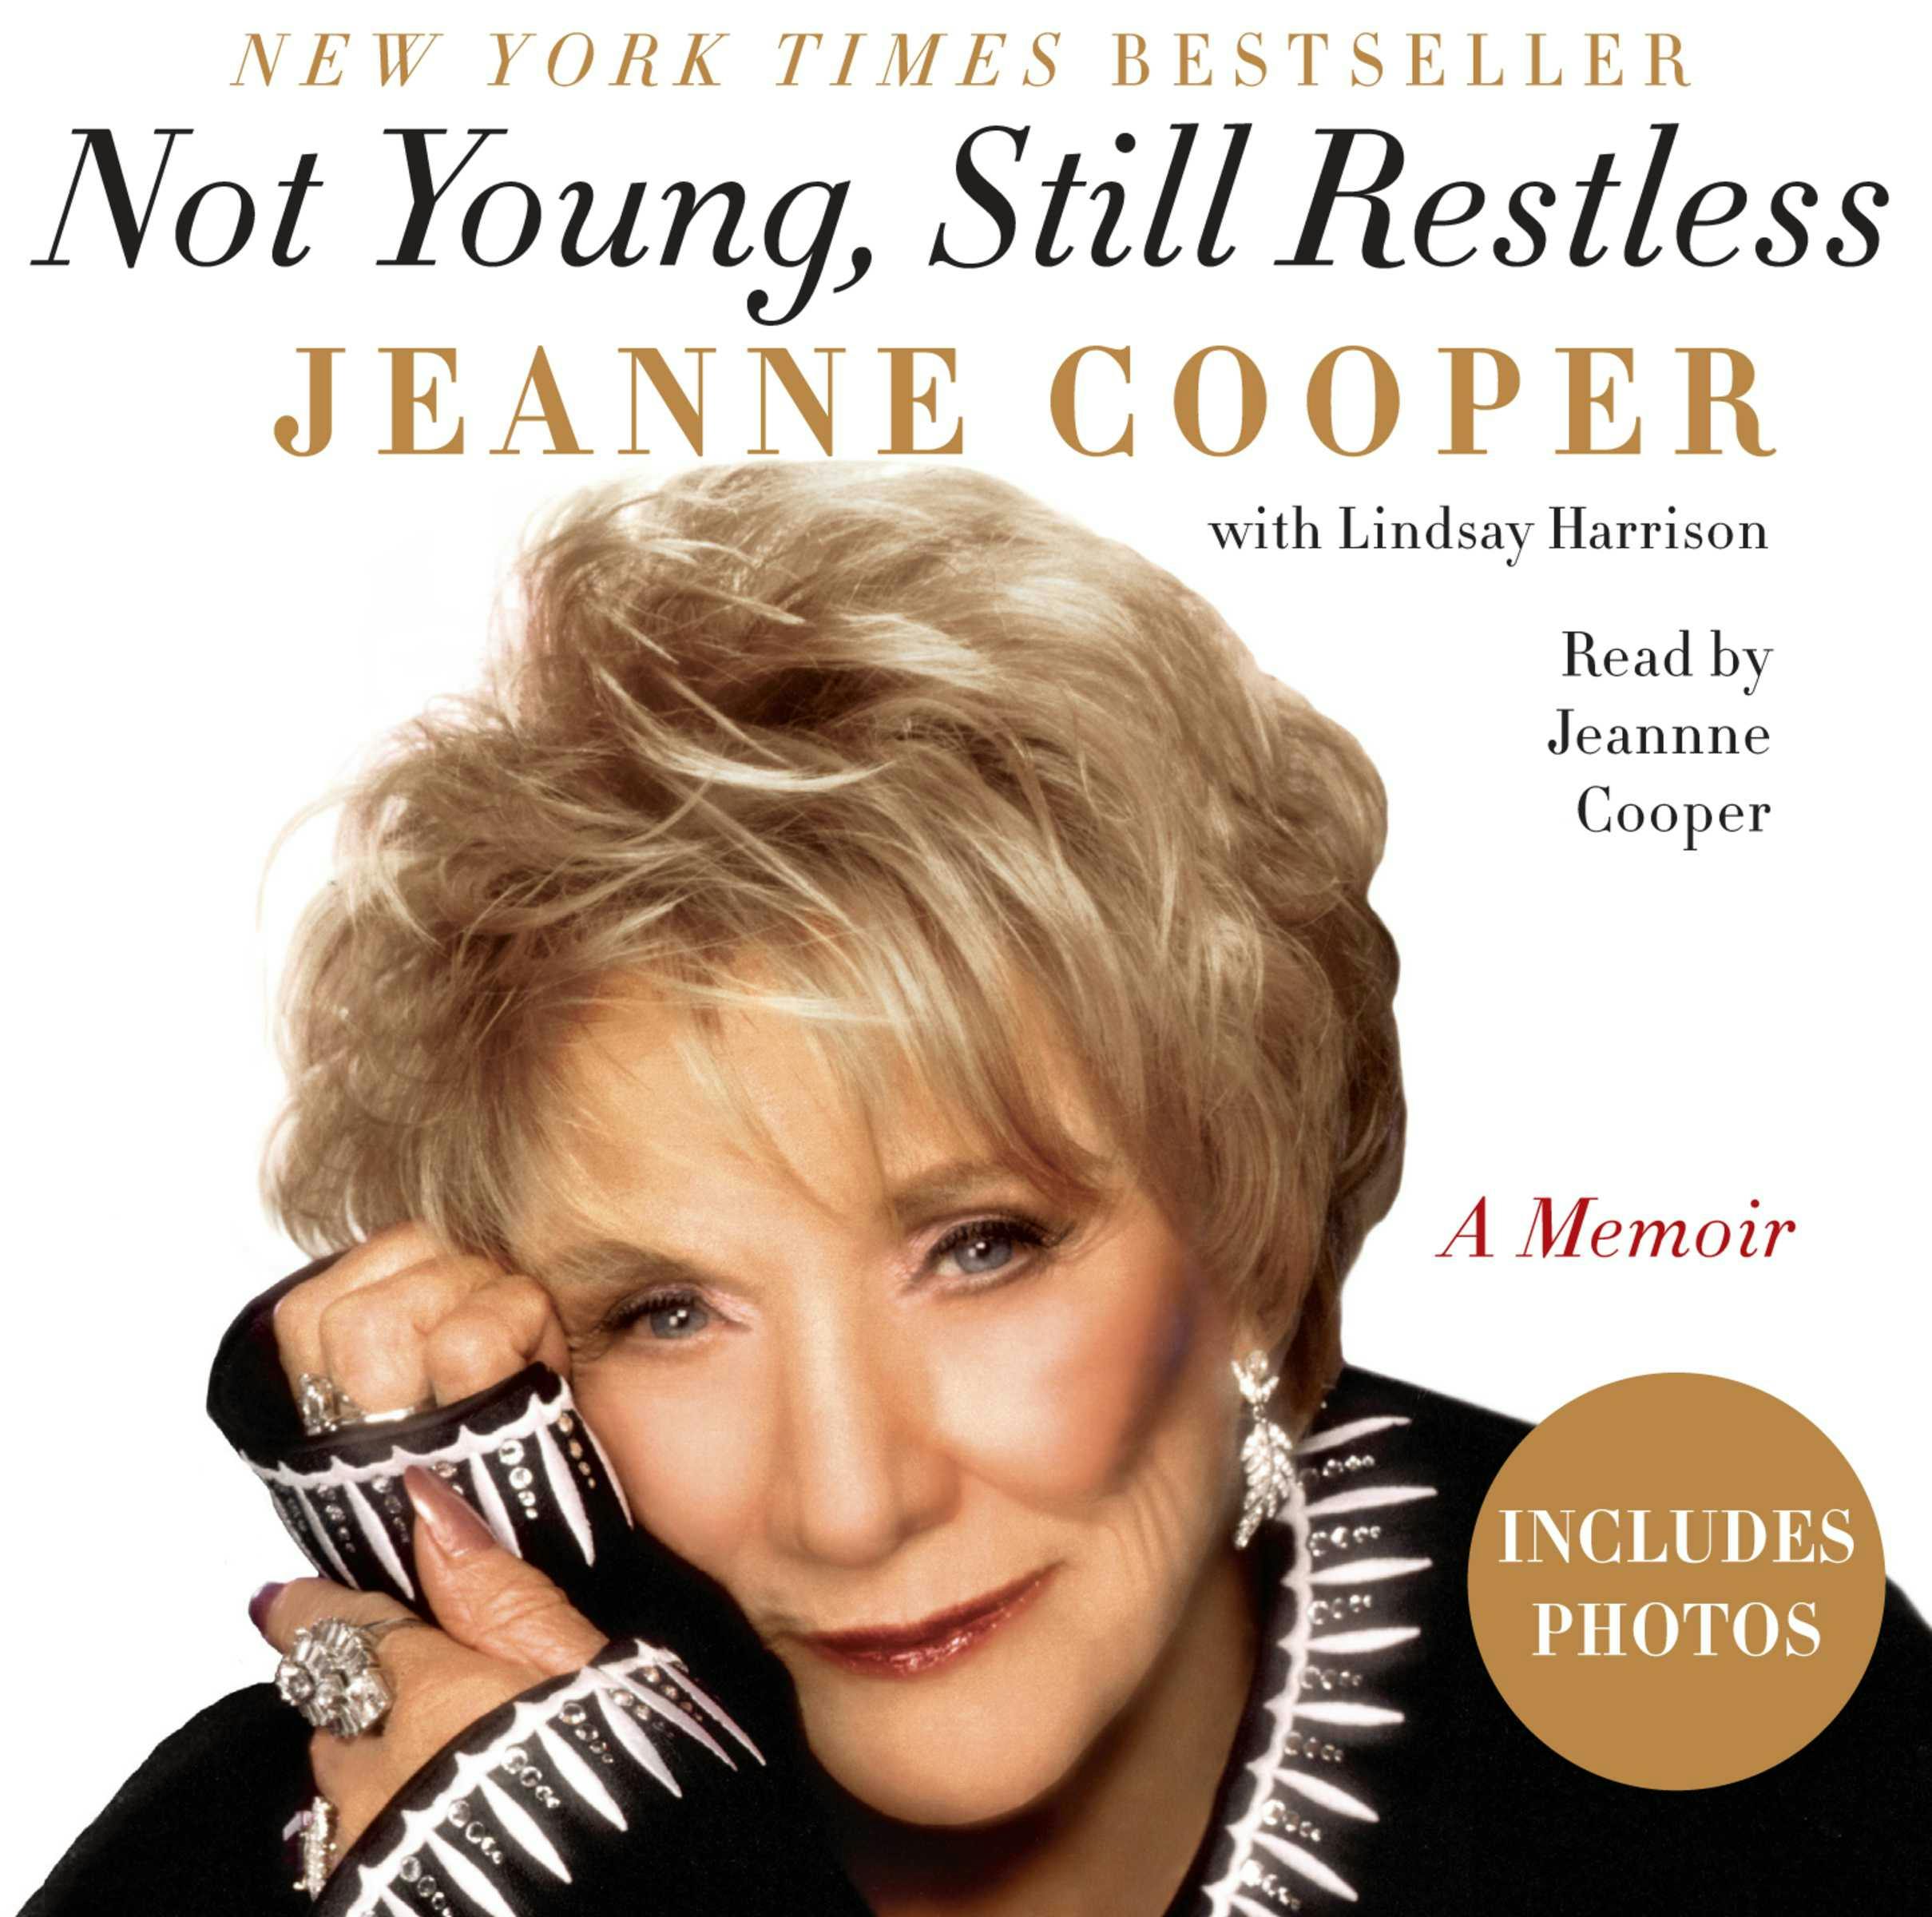 Not Young, Still Restless: A Memoir - Jeanne Cooper